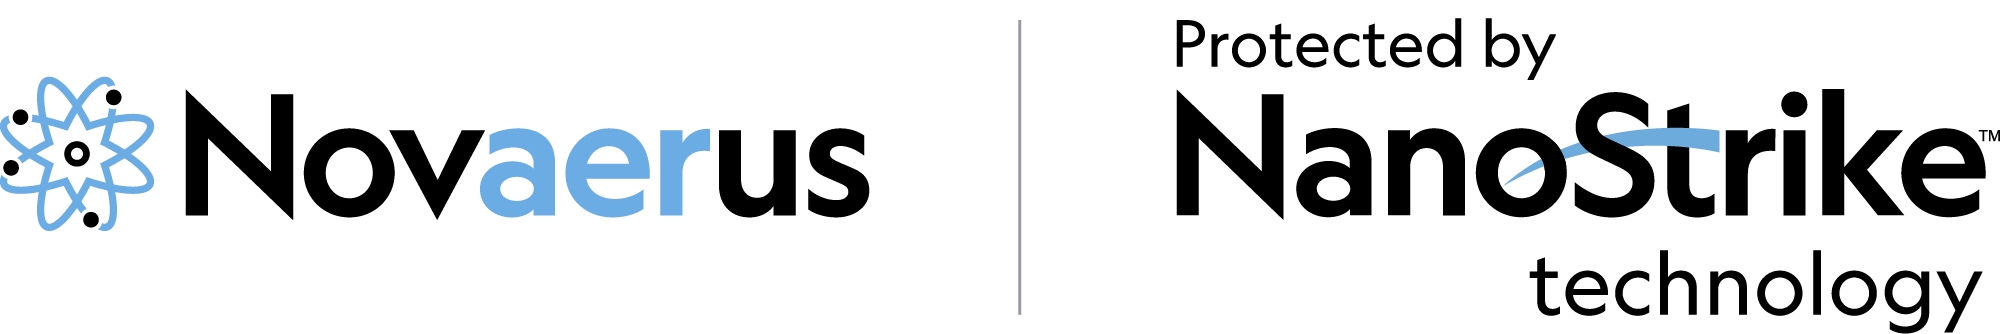 Novaerus and NanoStrike logos